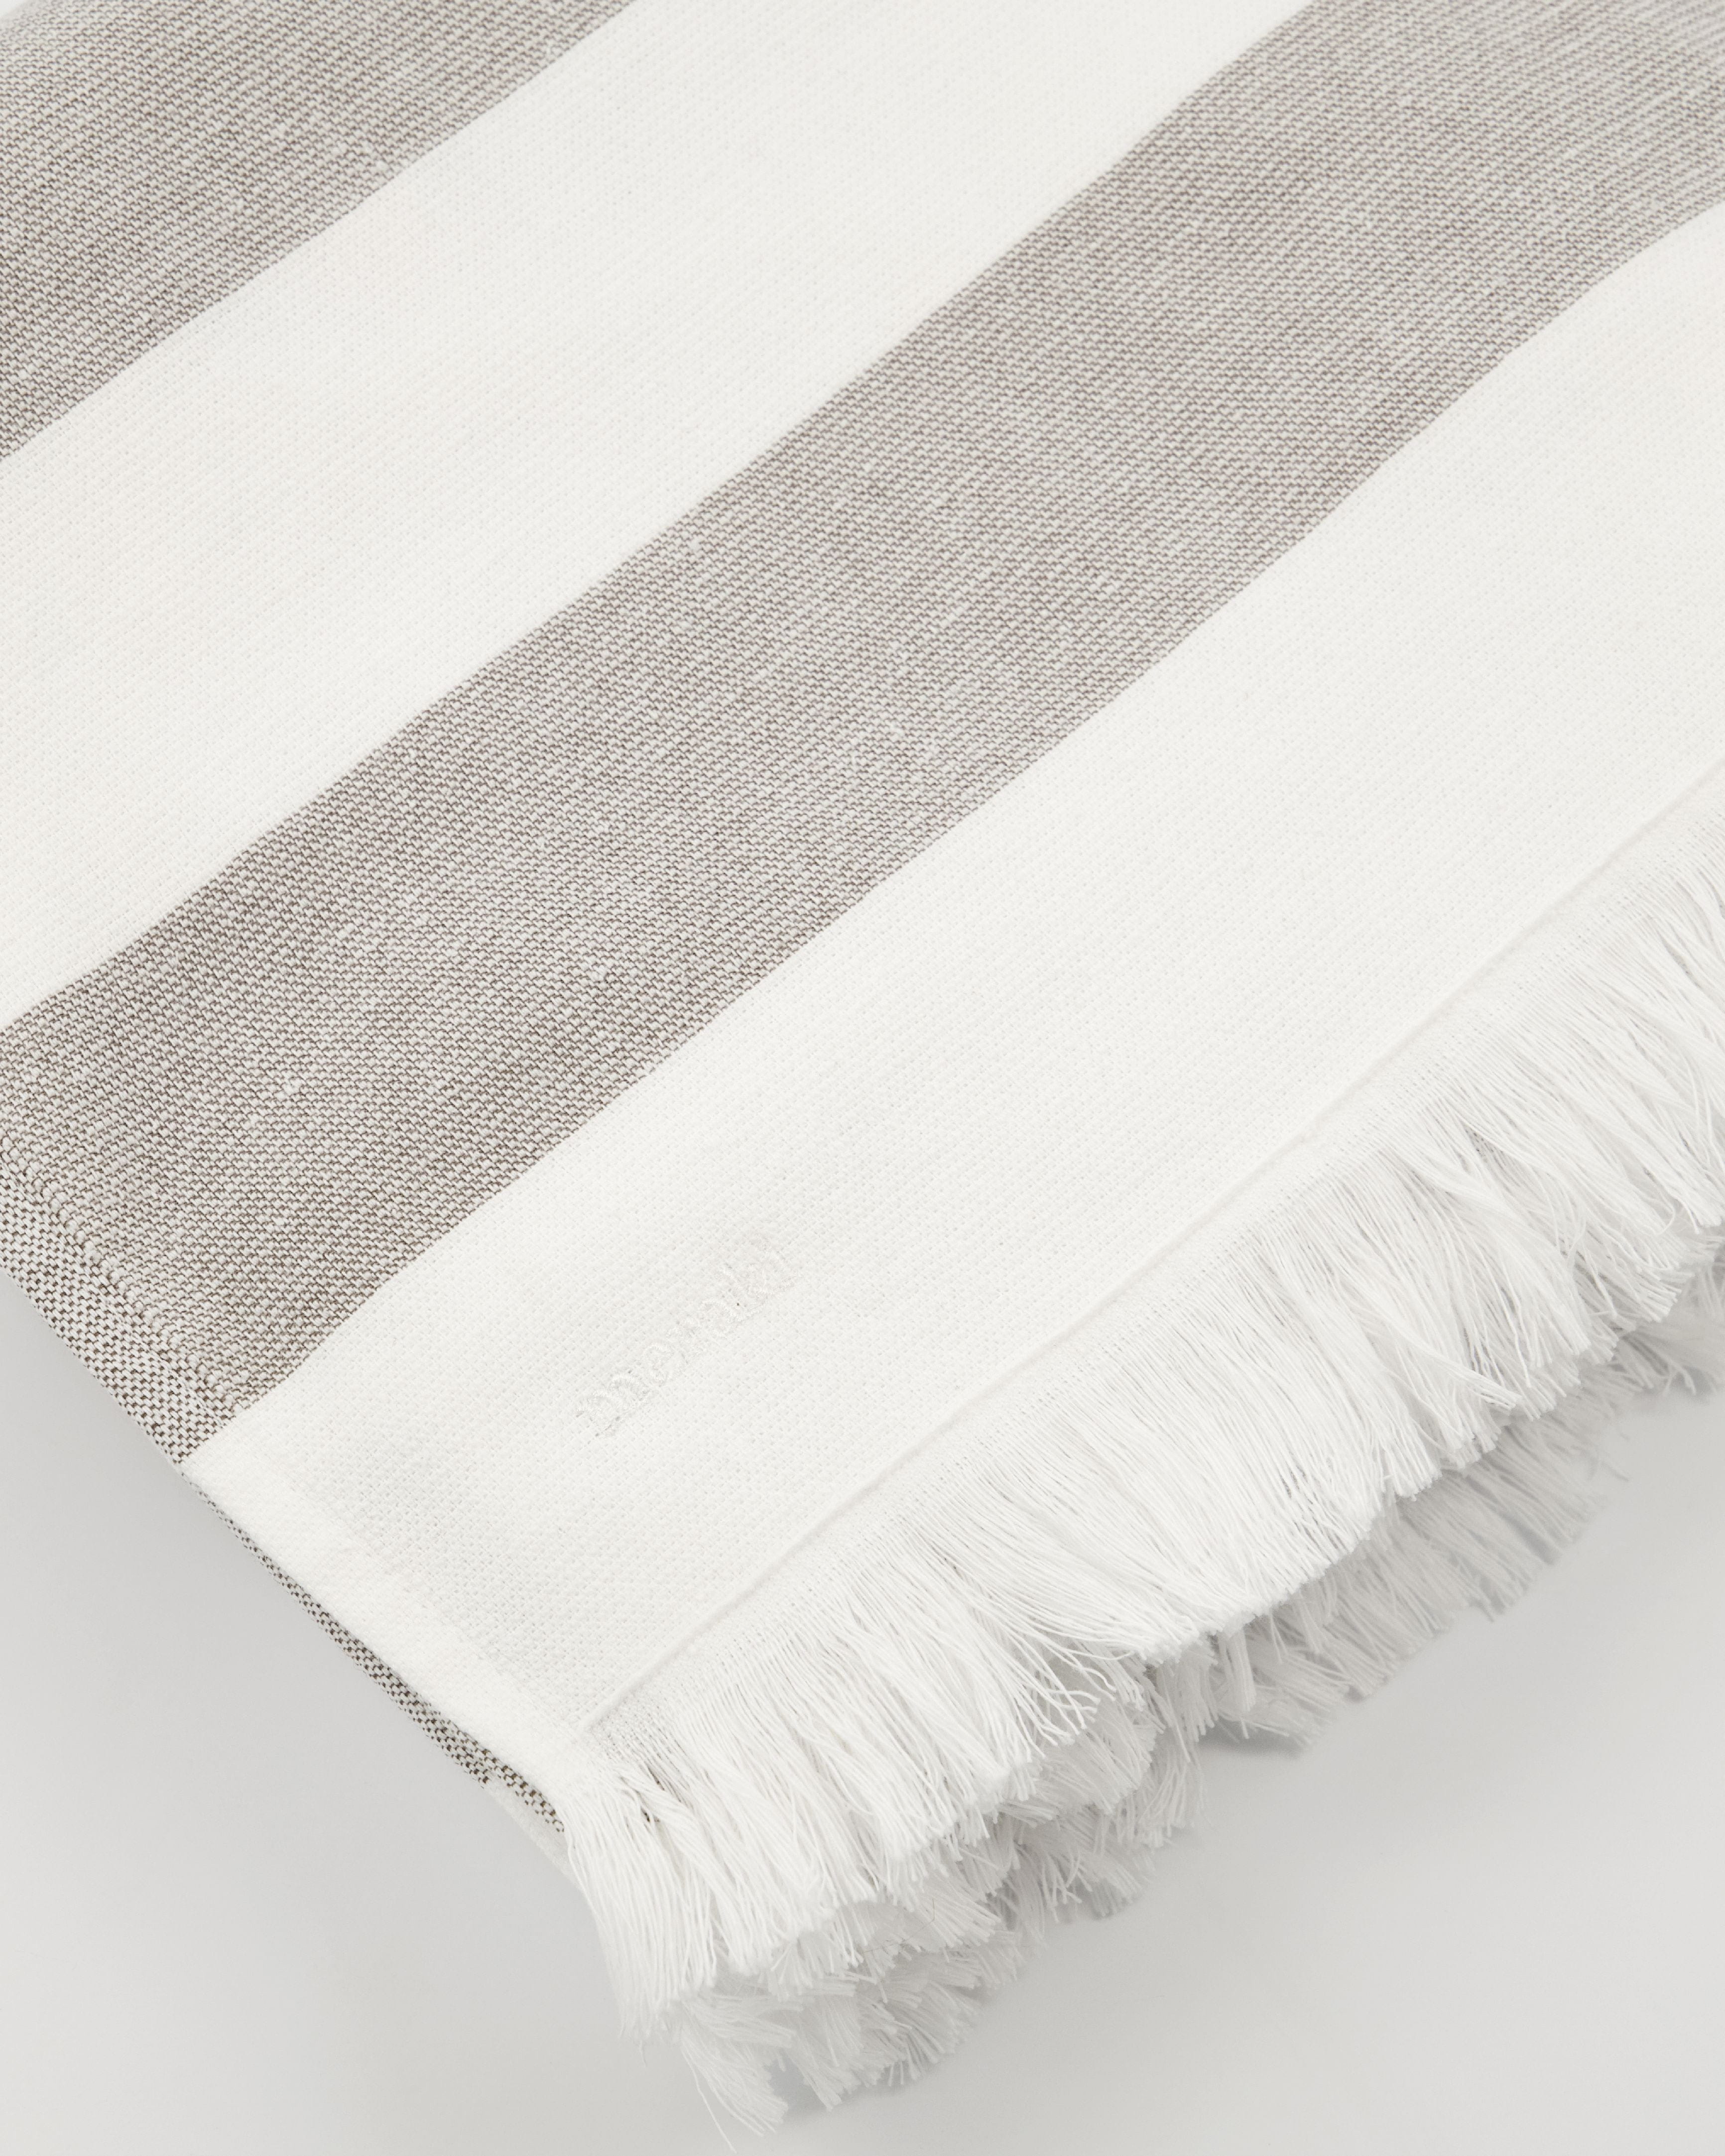 Meraki Barbarum asciugamano 100x180 cm, strisce bianche e marroni